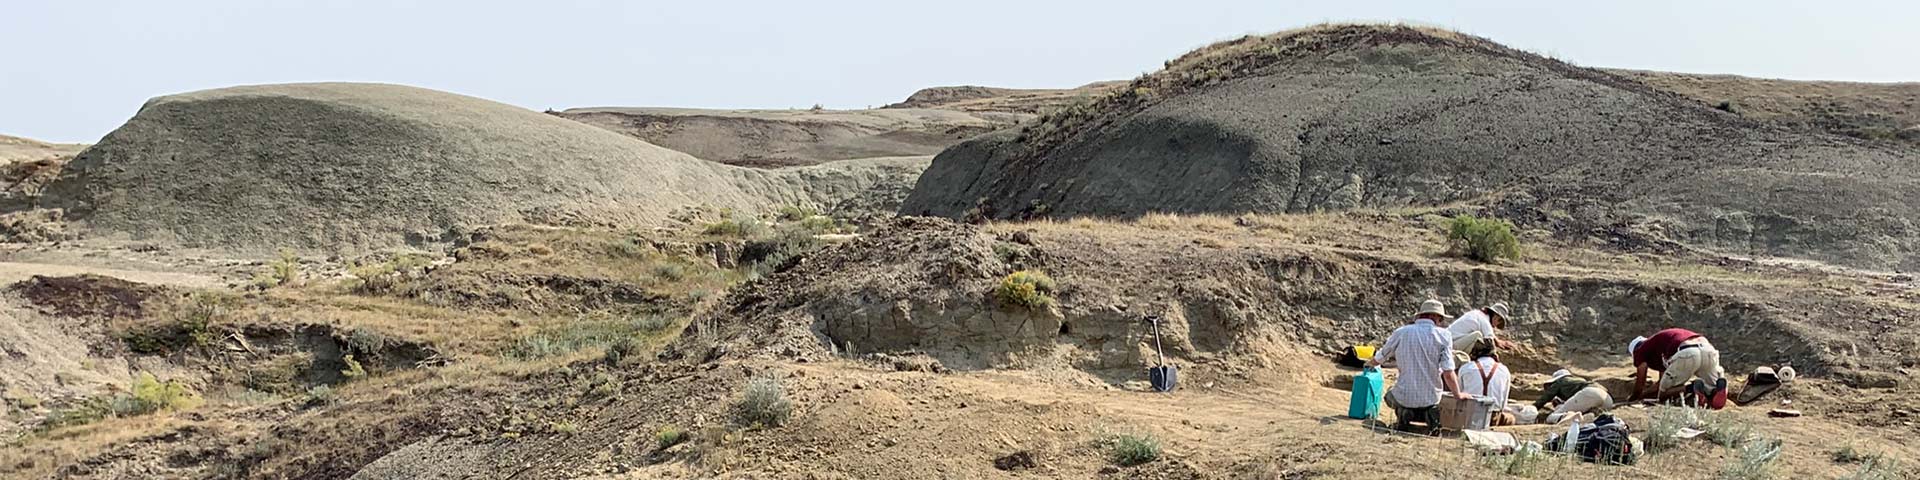 Visiteurs et paléontologues travaillant sur un site de fouille de fossiles dans le parc national des Prairies.